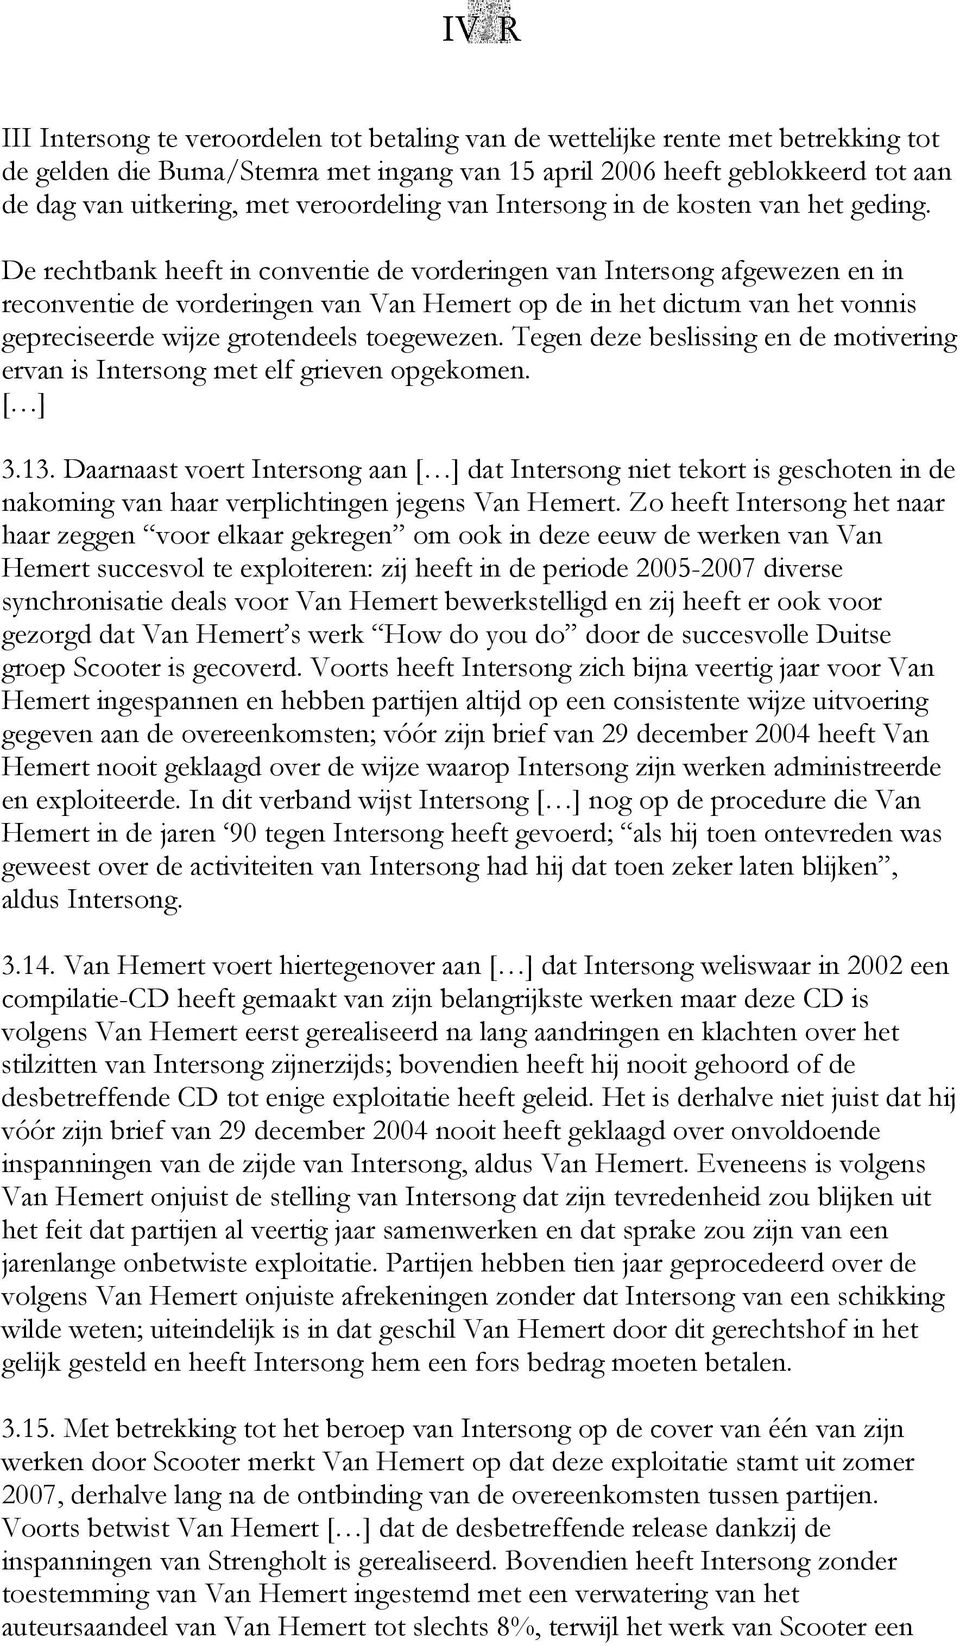 De rechtbank heeft in conventie de vorderingen van Intersong afgewezen en in reconventie de vorderingen van Van Hemert op de in het dictum van het vonnis gepreciseerde wijze grotendeels toegewezen.